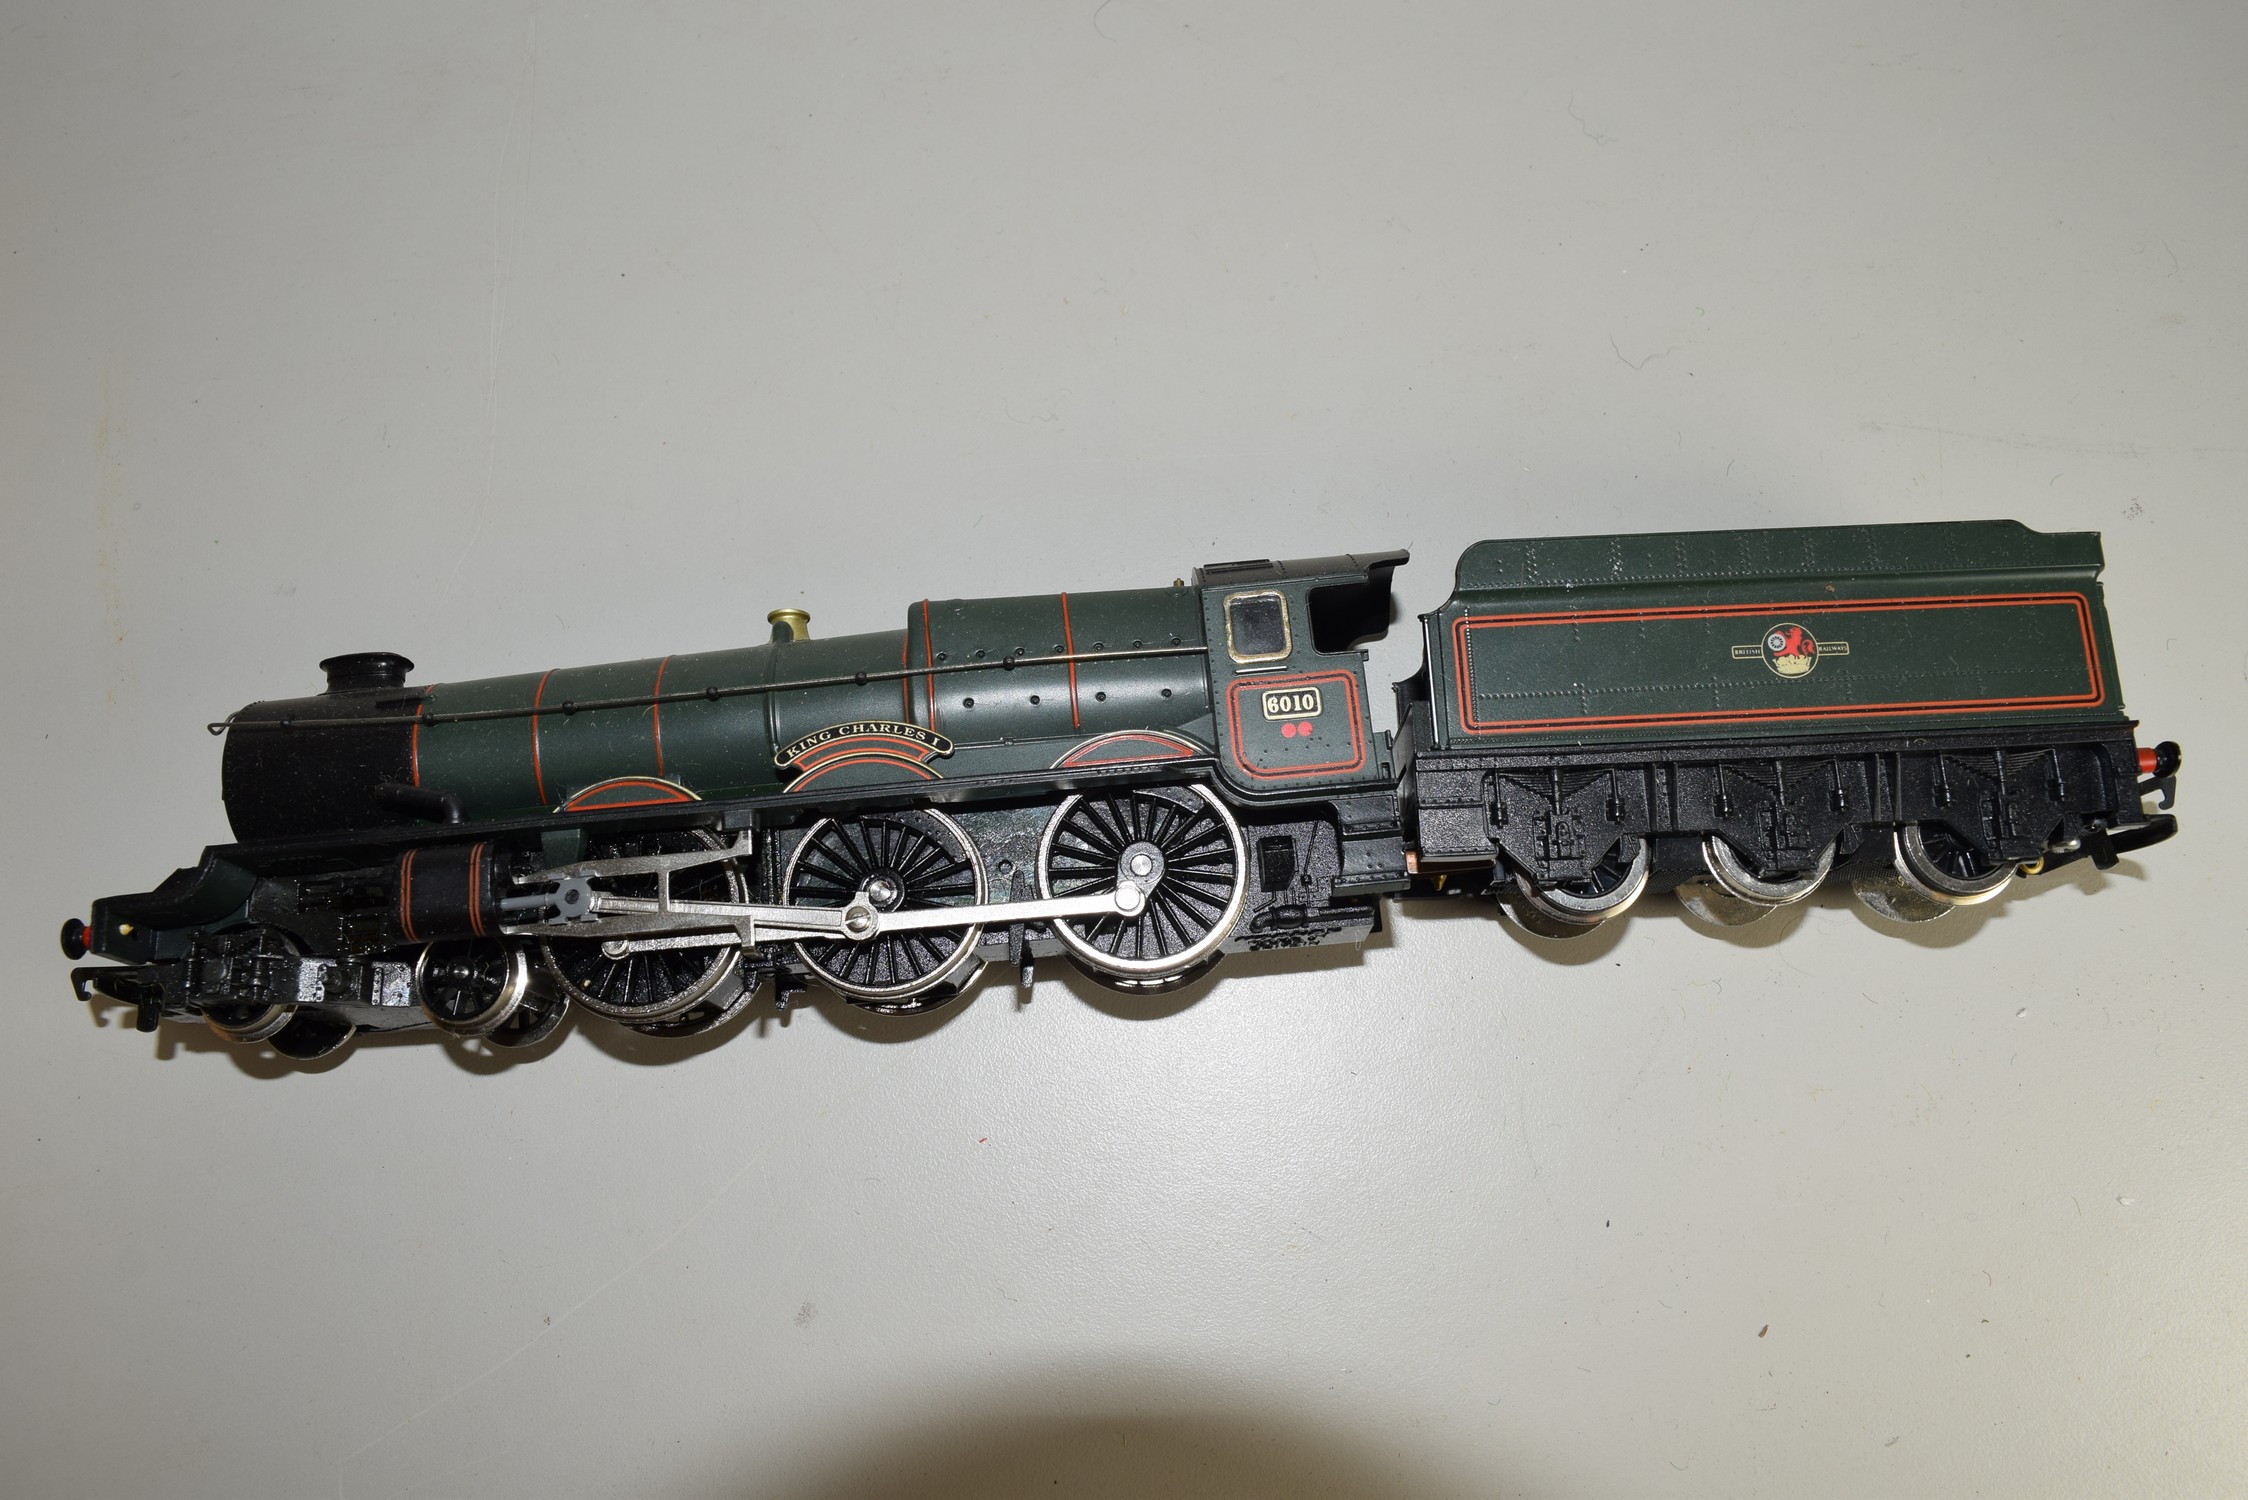 Unboxed Hornby 00 gauge "King Charles I" locomotive no 6010